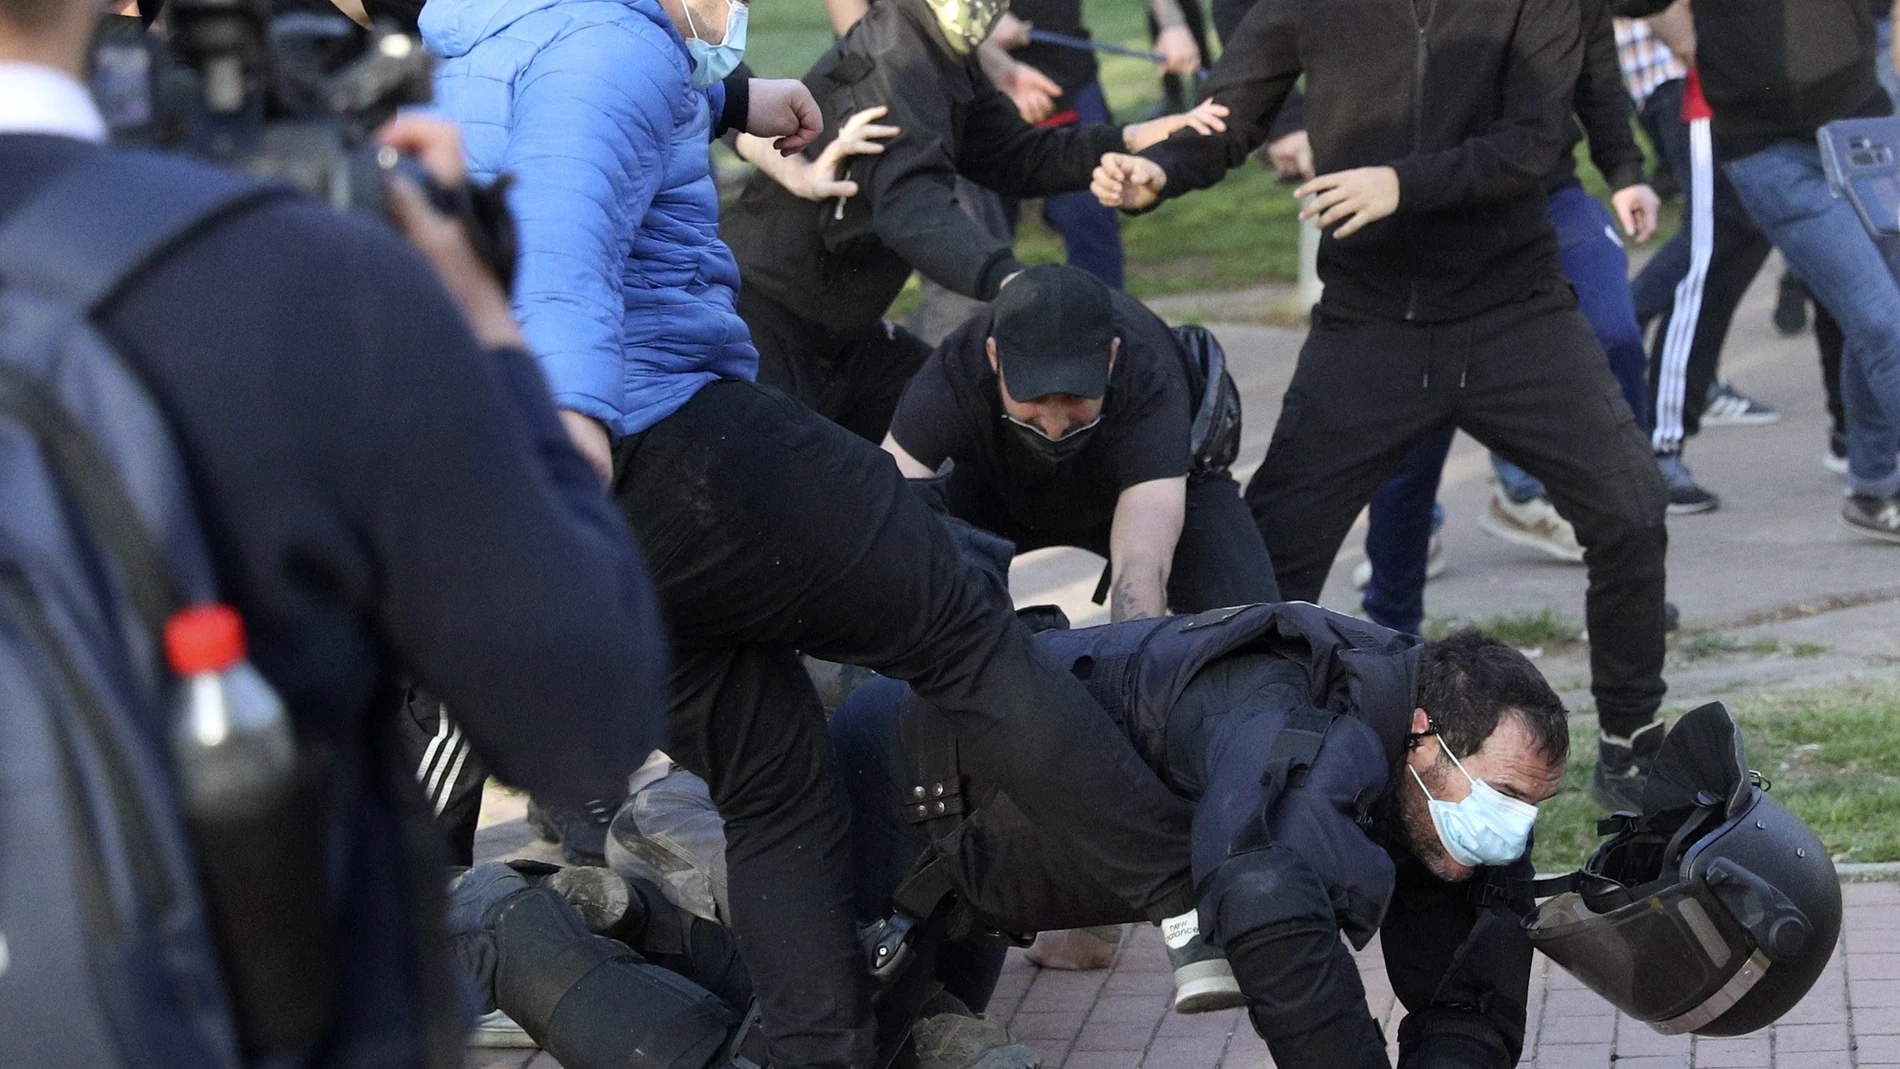 Radicales patean a un policía en el suelo y sin casco durante el mitin de Vox en la Plaza Roja de Vallecas, el miércoles z